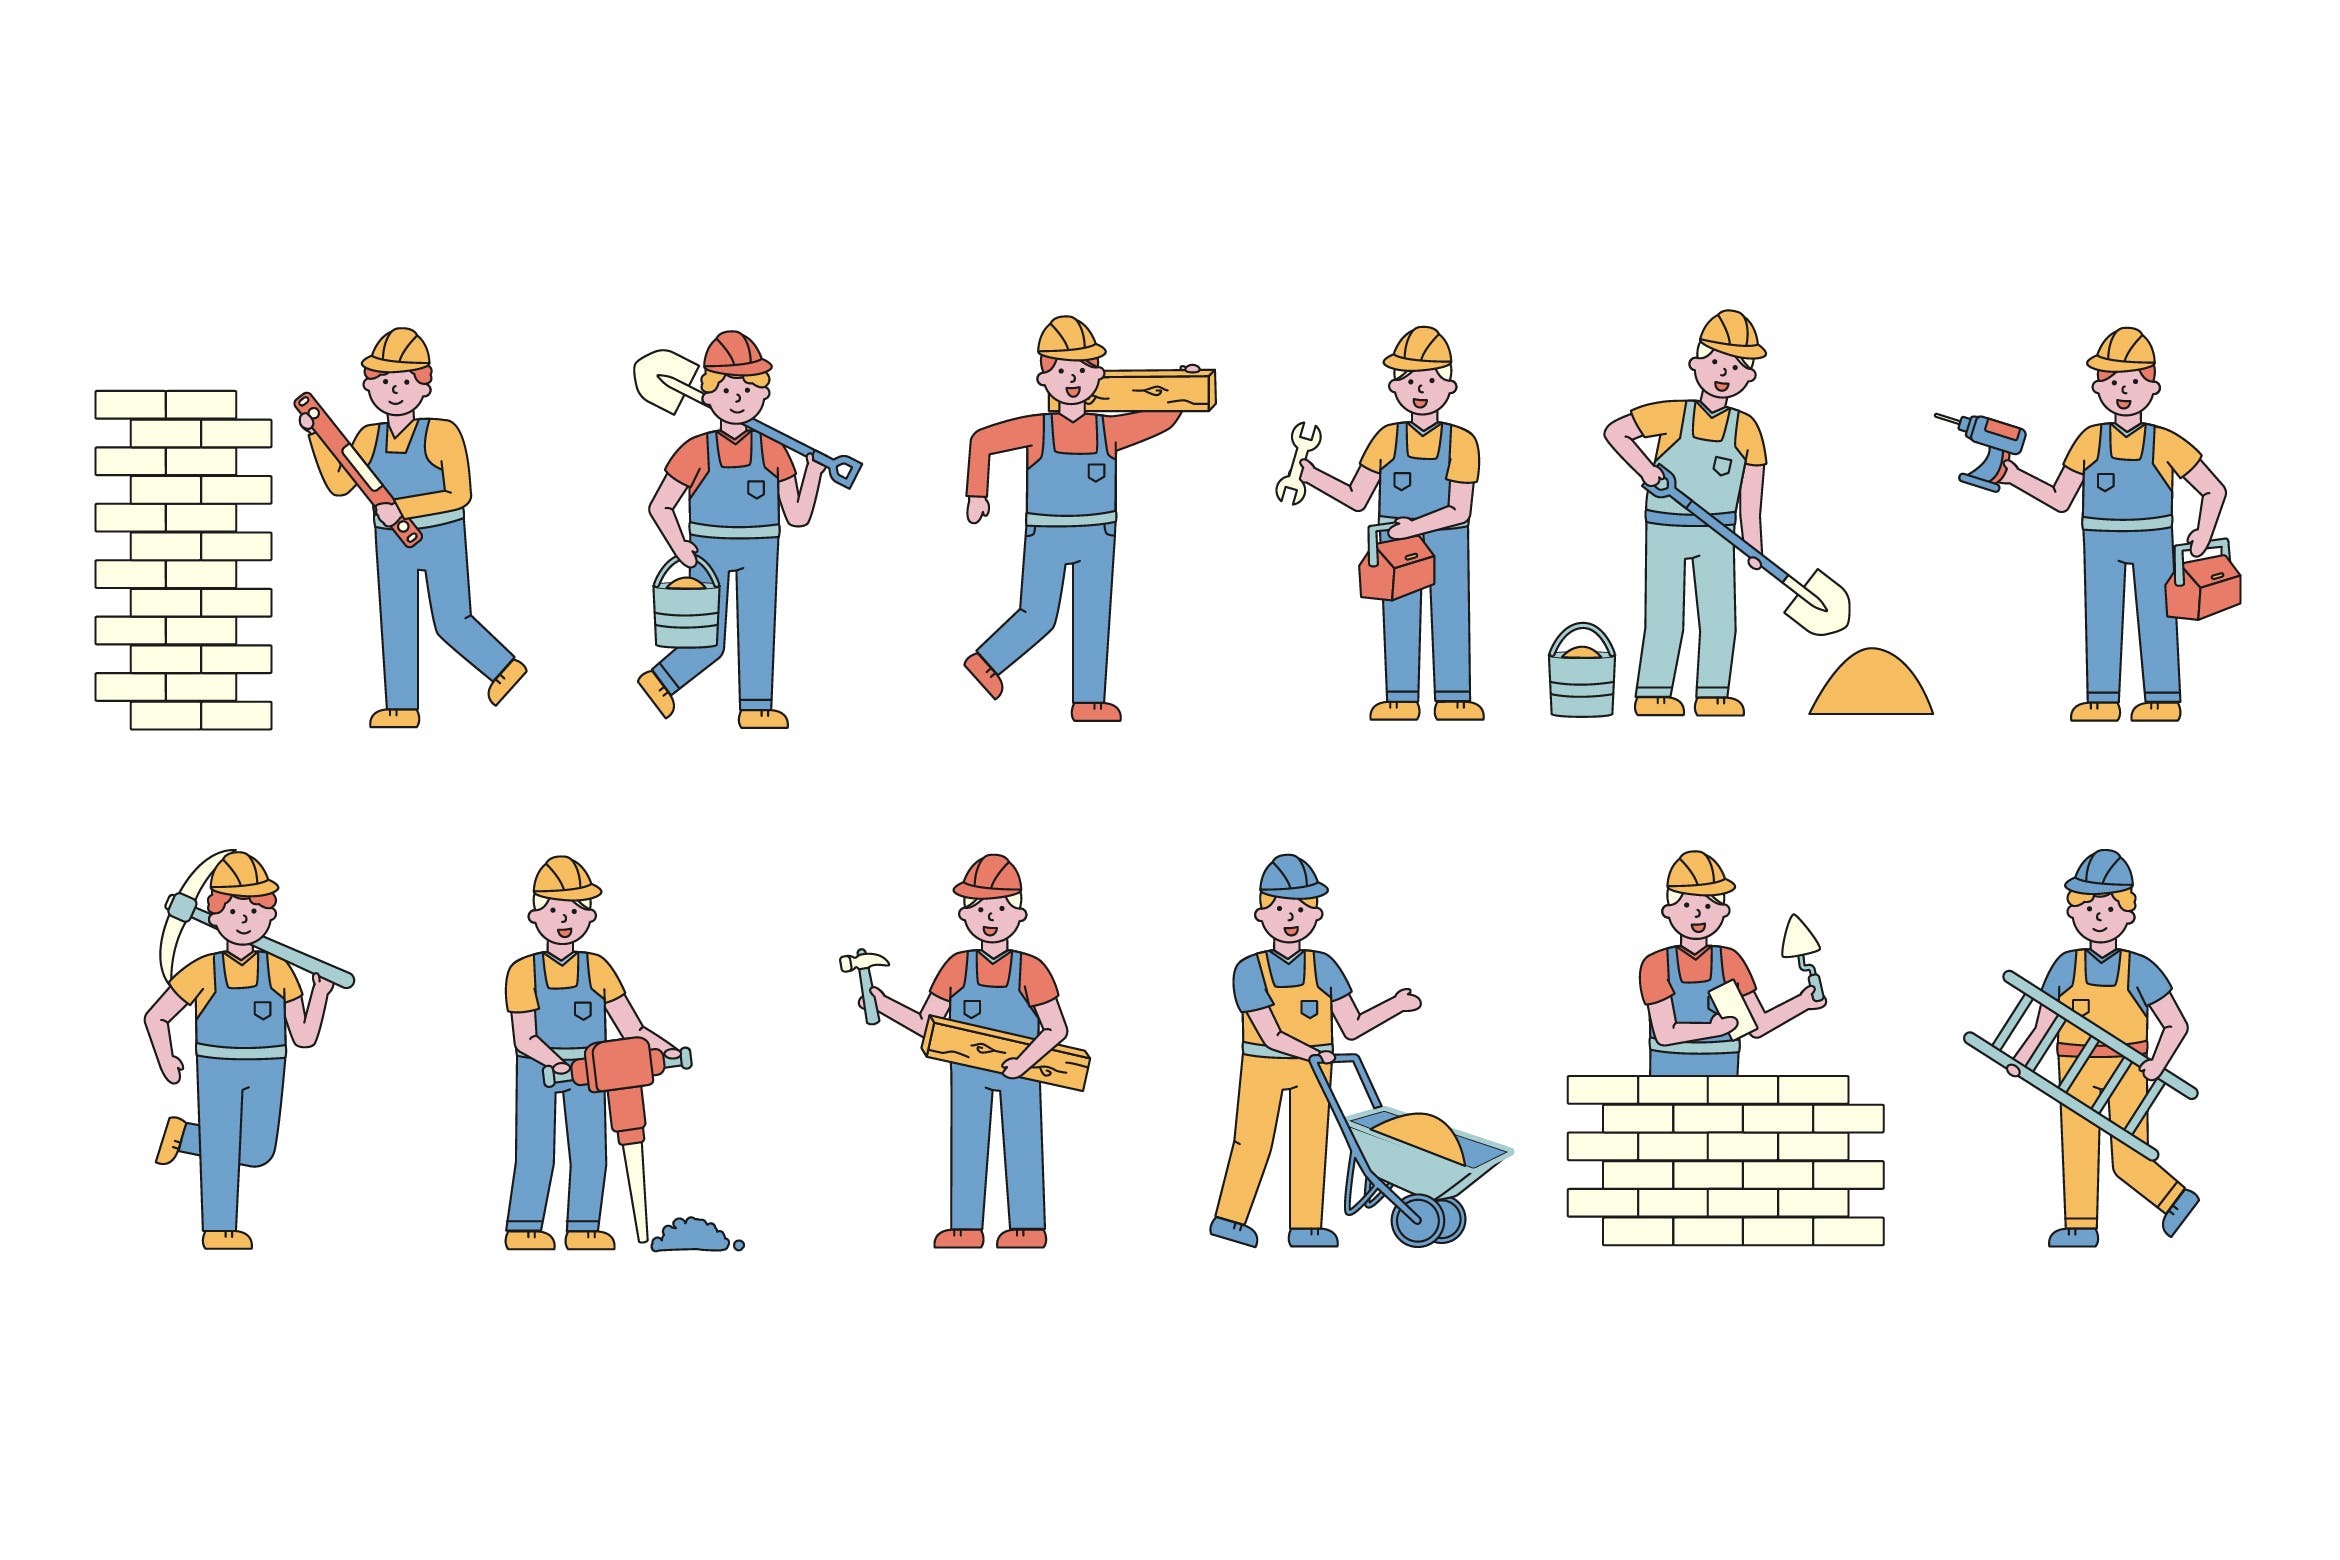 建筑工人人物形象线条艺术矢量插画蚂蚁素材精选素材 Builders Lineart People Character Collection插图